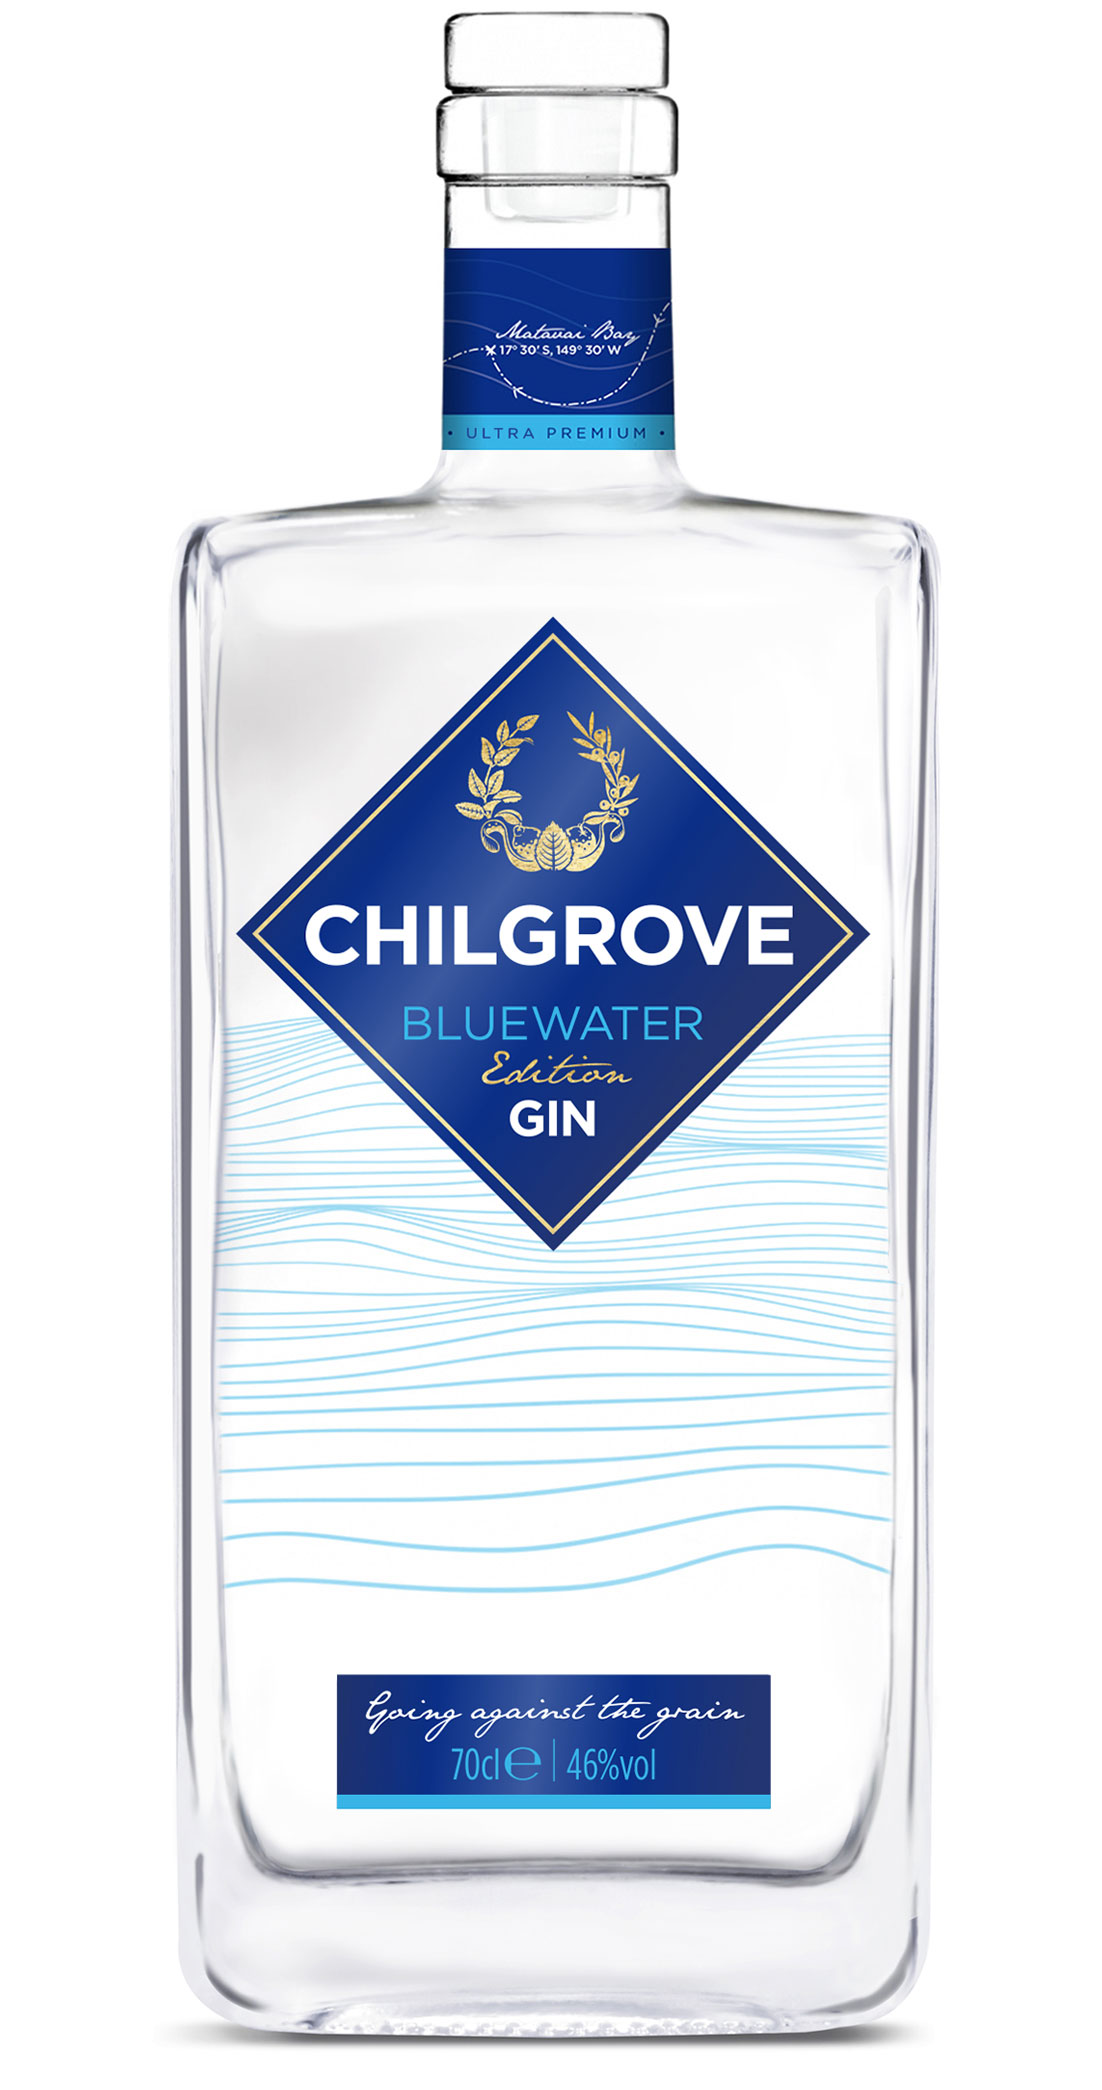 Chilgrove Bluewater Gin